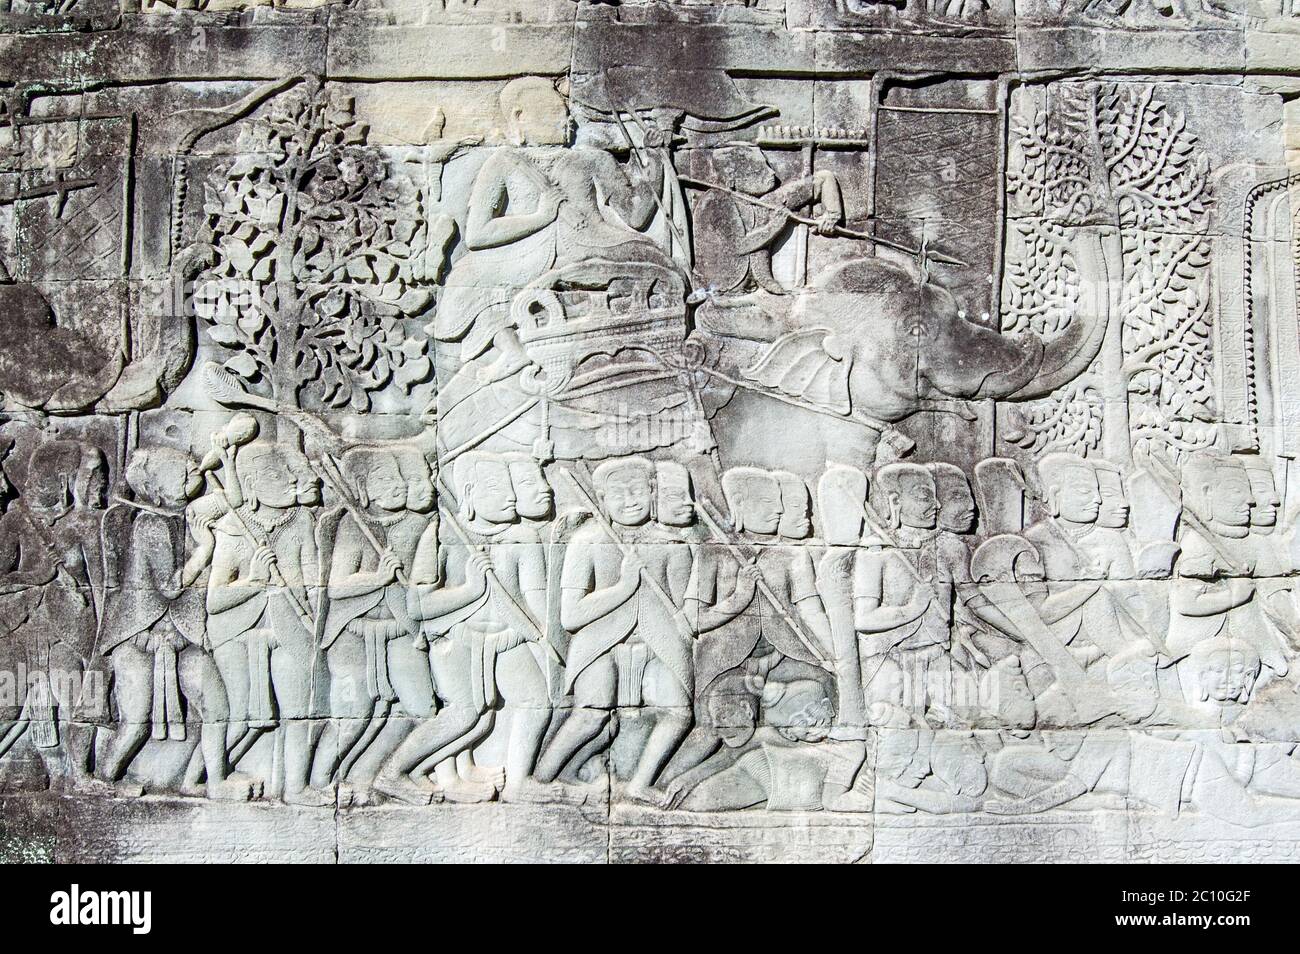 Alte Khmer Bas Relief Schnitzerei eines Armeekommandanten Reiten ein Elefant in die Schlacht. Außenwand des Bayon-Tempels, Angkor Thom, Siem Reap, Kambodscha. Stockfoto